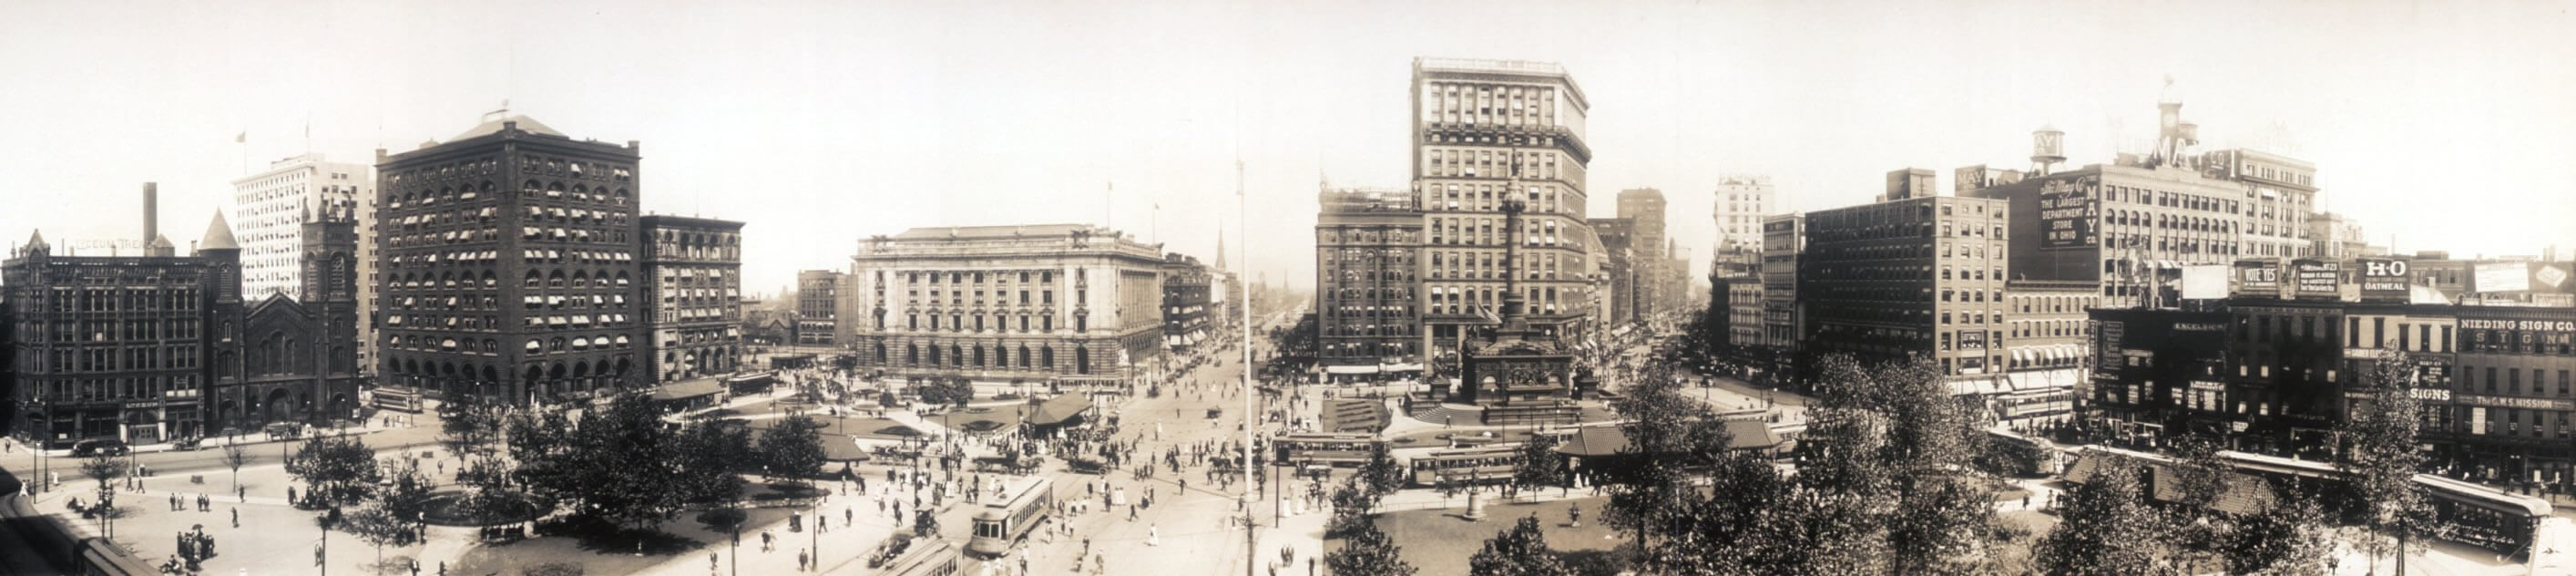 Panorama of Public Square in 1912